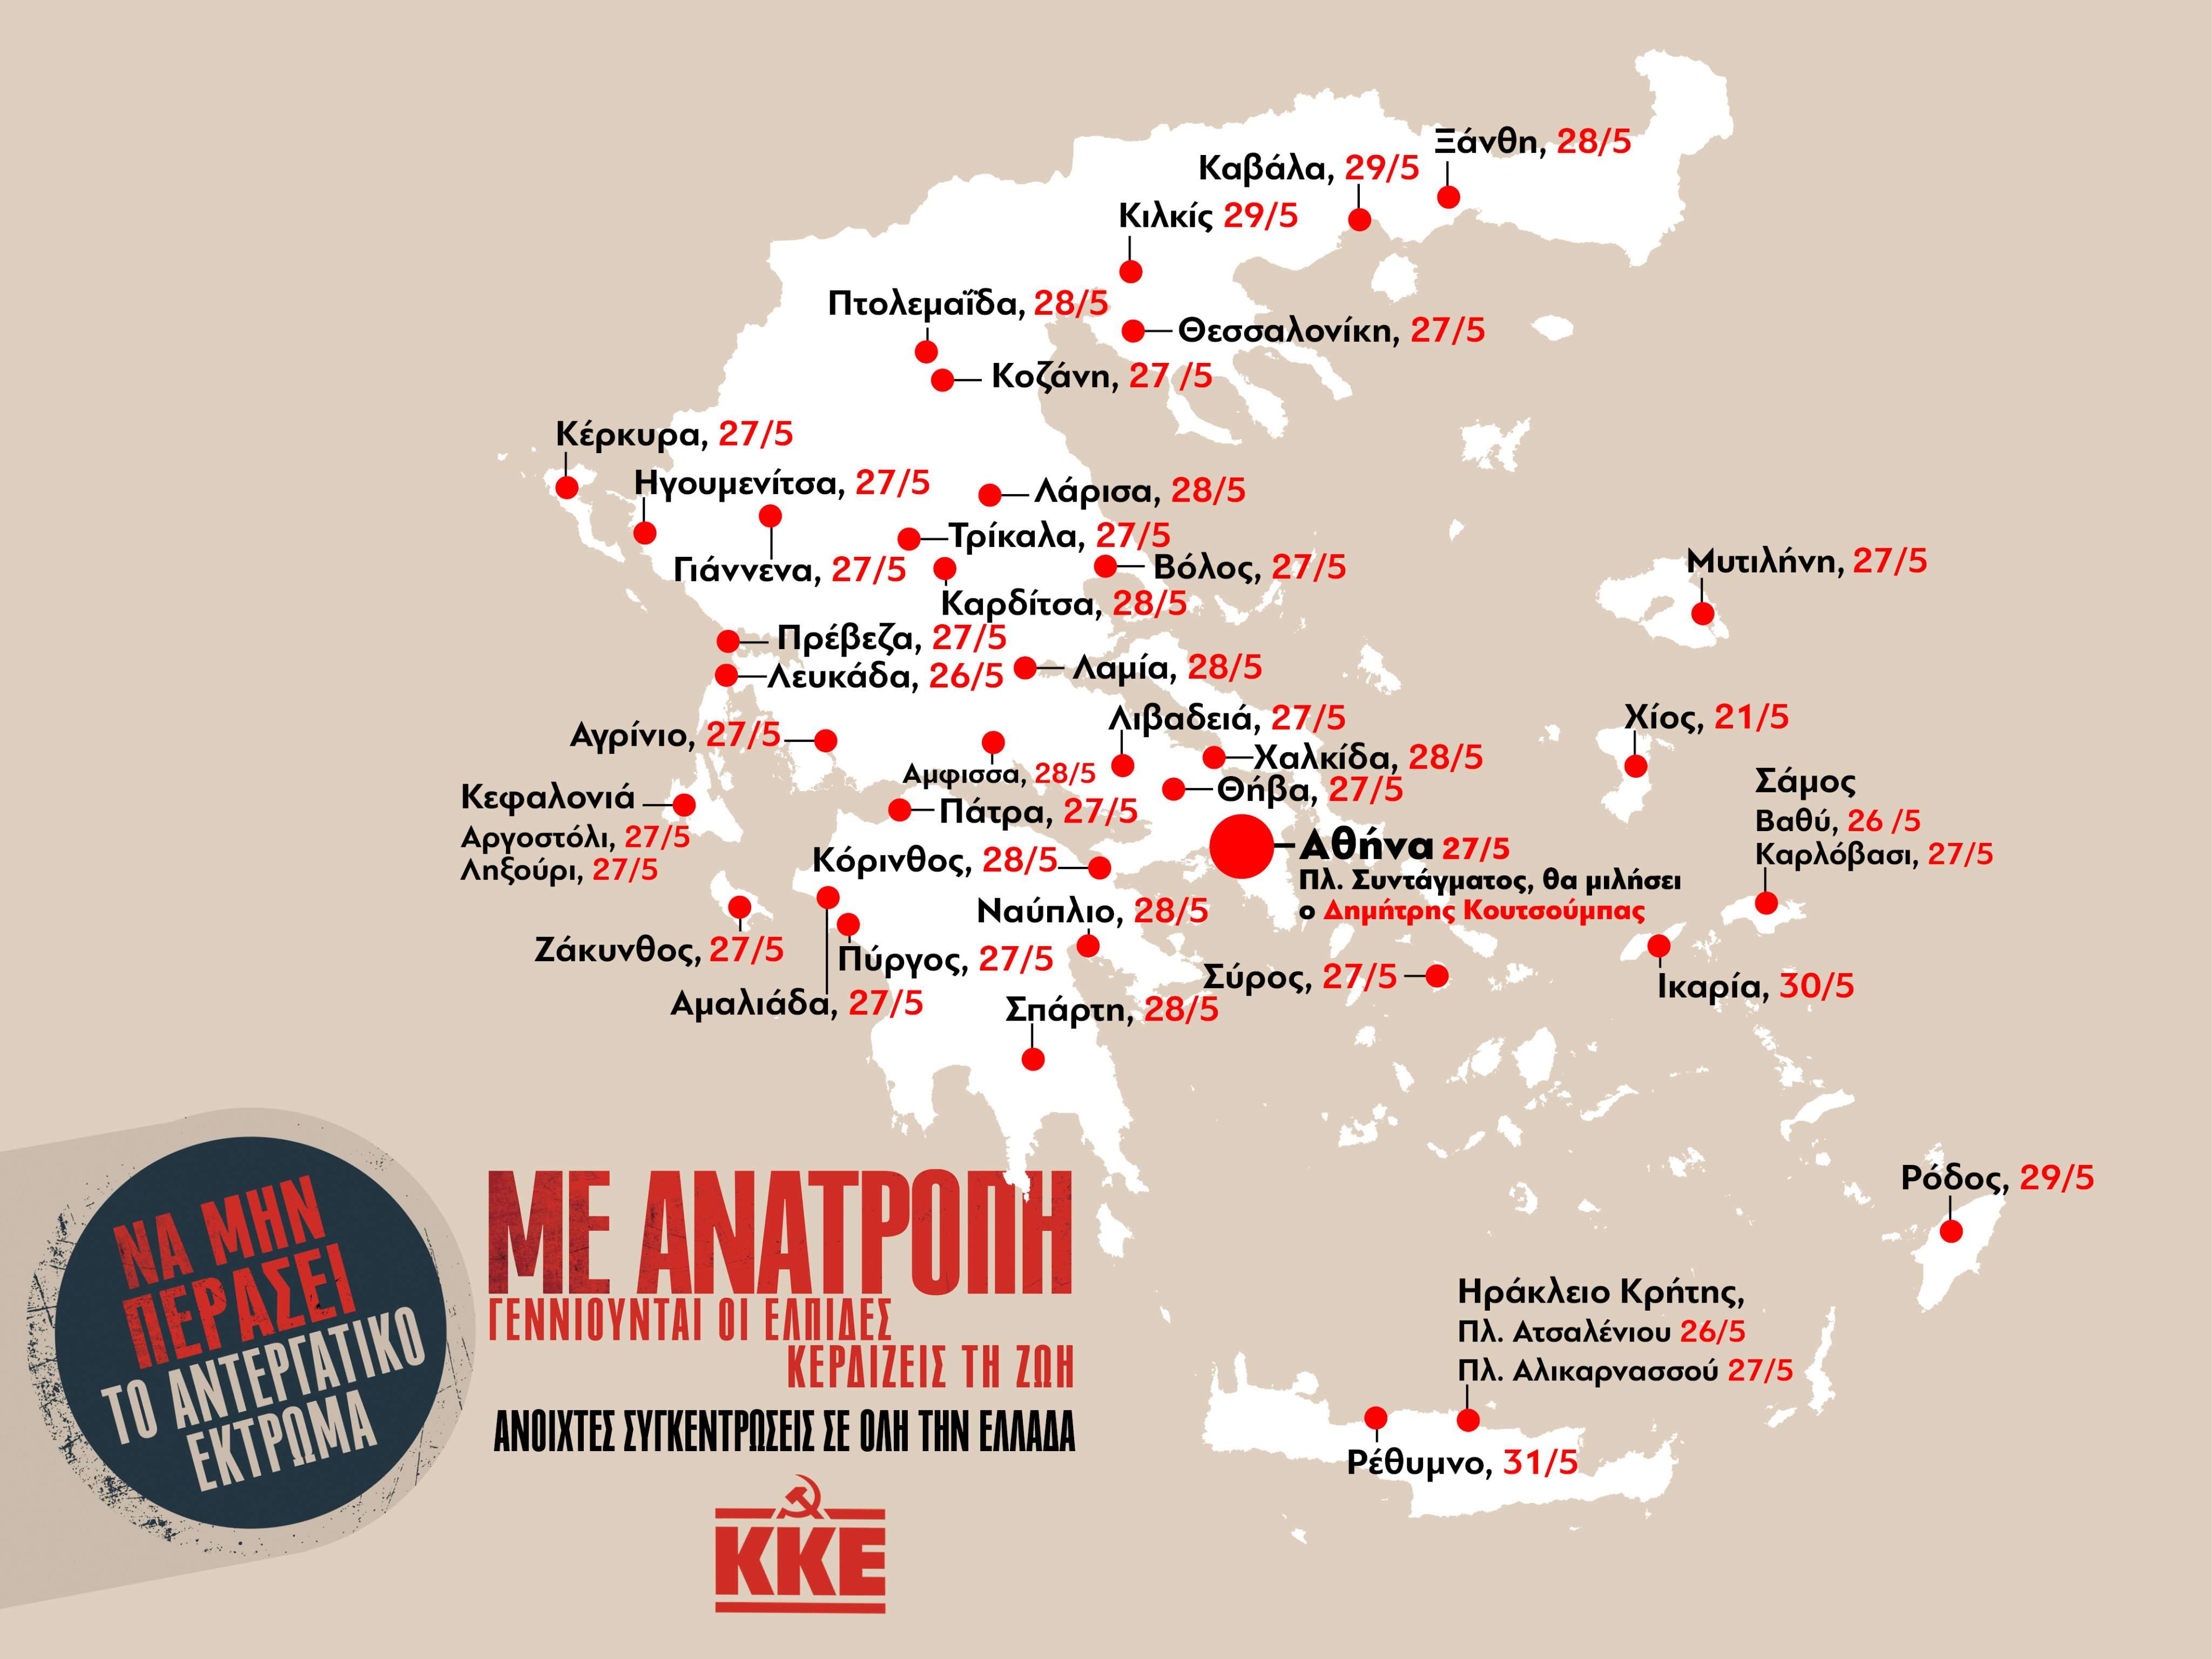 Σε όλη την Ελλάδα το κάλεσμα του ΚKE